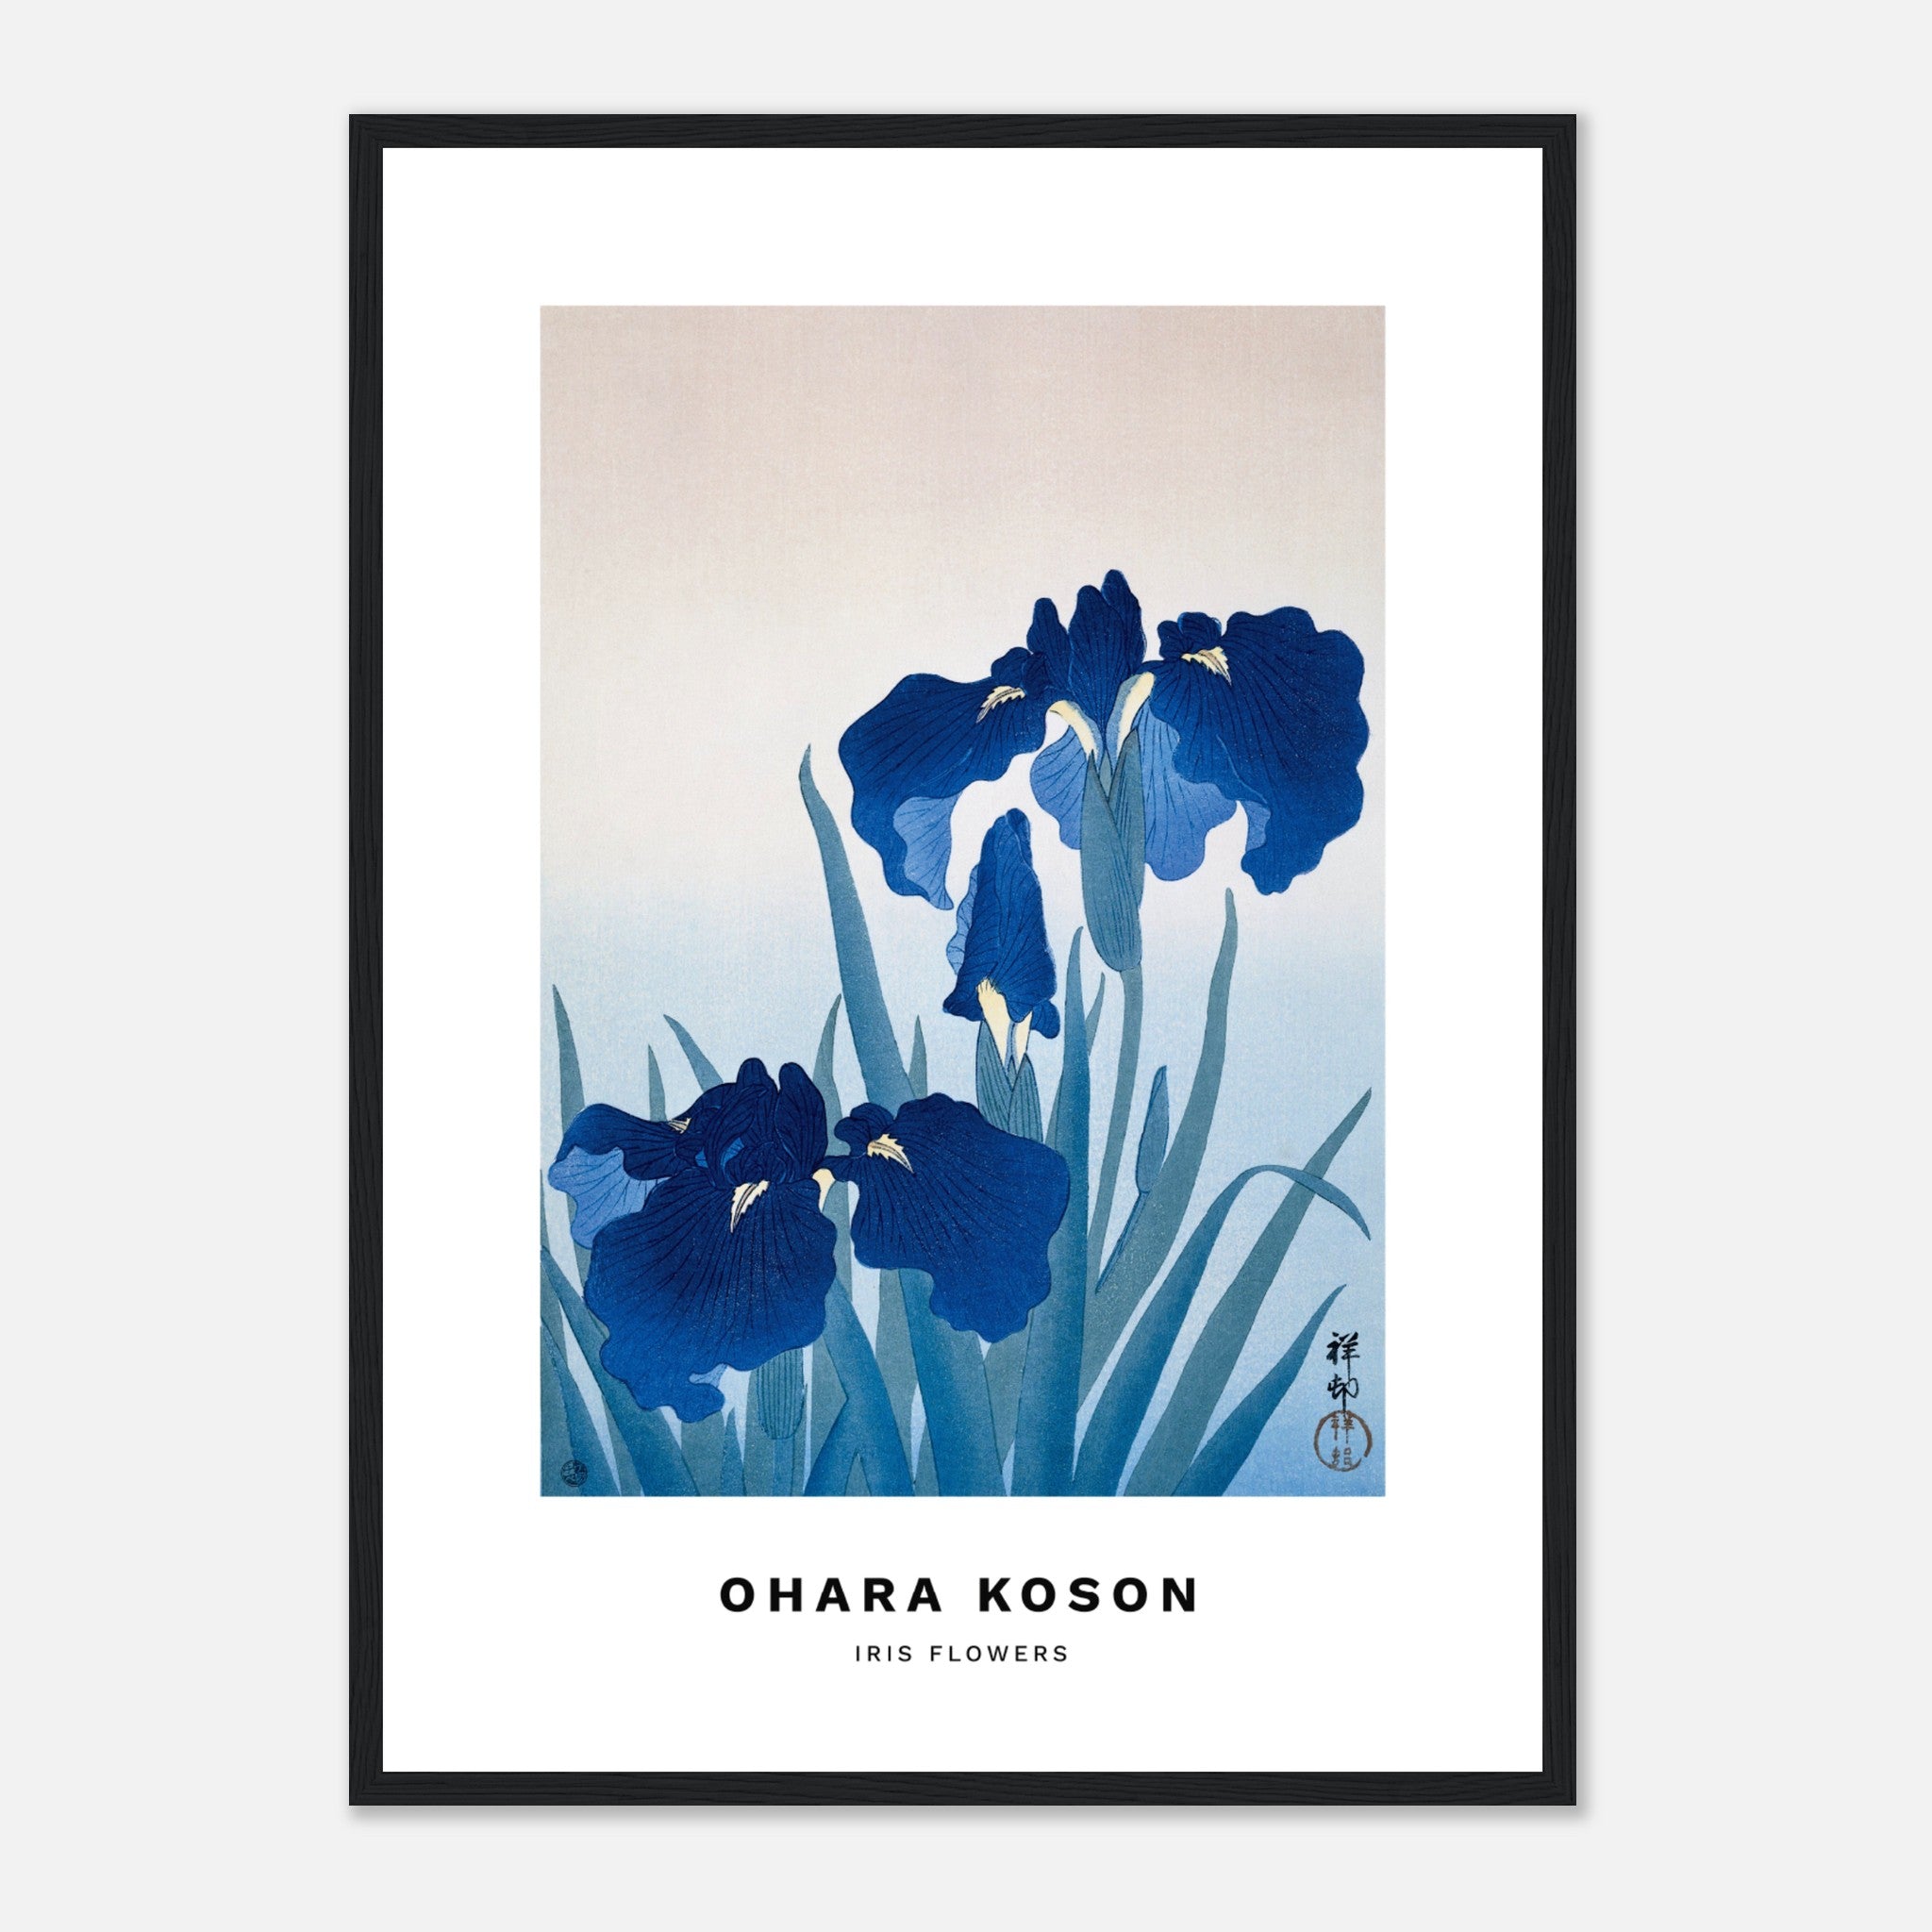 Iris flowers by Ohara Koson Poster